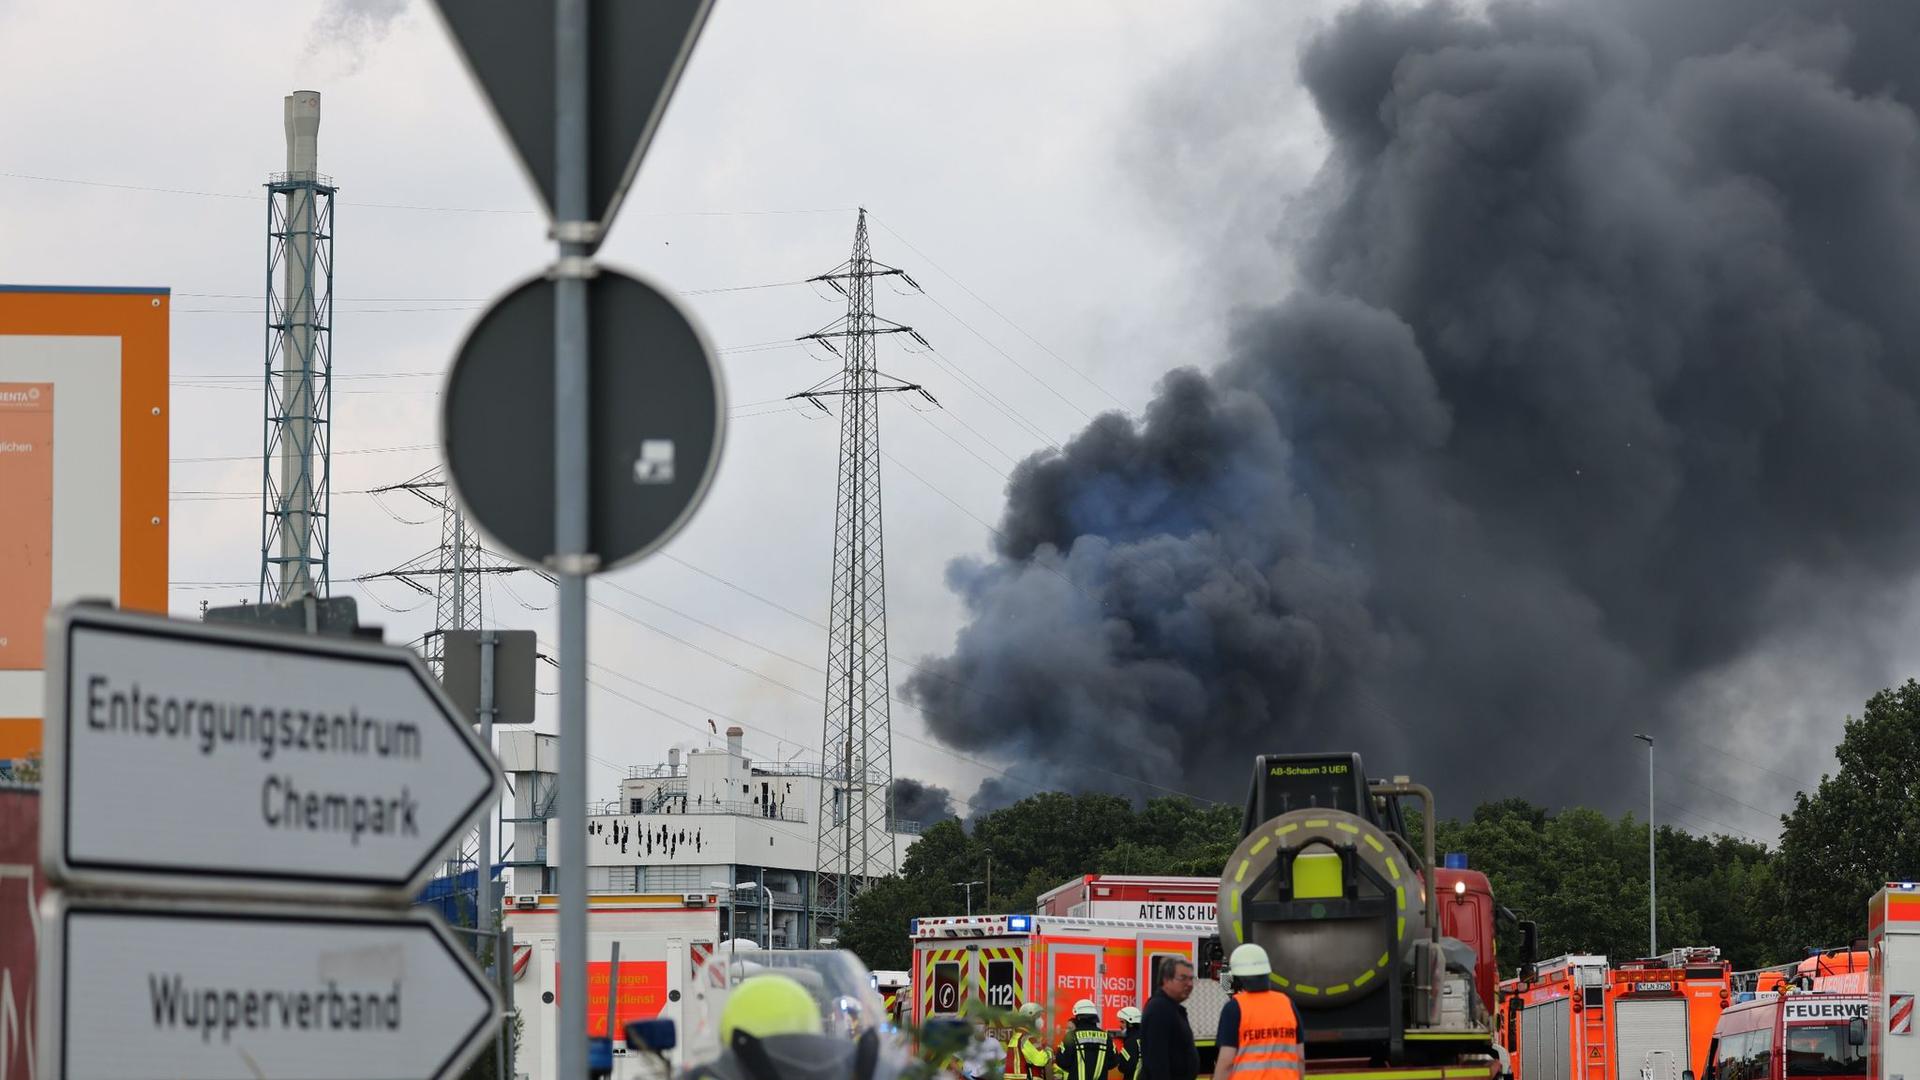 Einsatzfahrzeuge der Feuerwehr und  Rettungsdienste unweit einer Zufahrt zum Chempark über dem eine dunkle Rauchwolke aufsteigt. Etwa eine Woche nach der Explosion in Leverkusen ist ein weiteres Todesopfer geborgen worden.